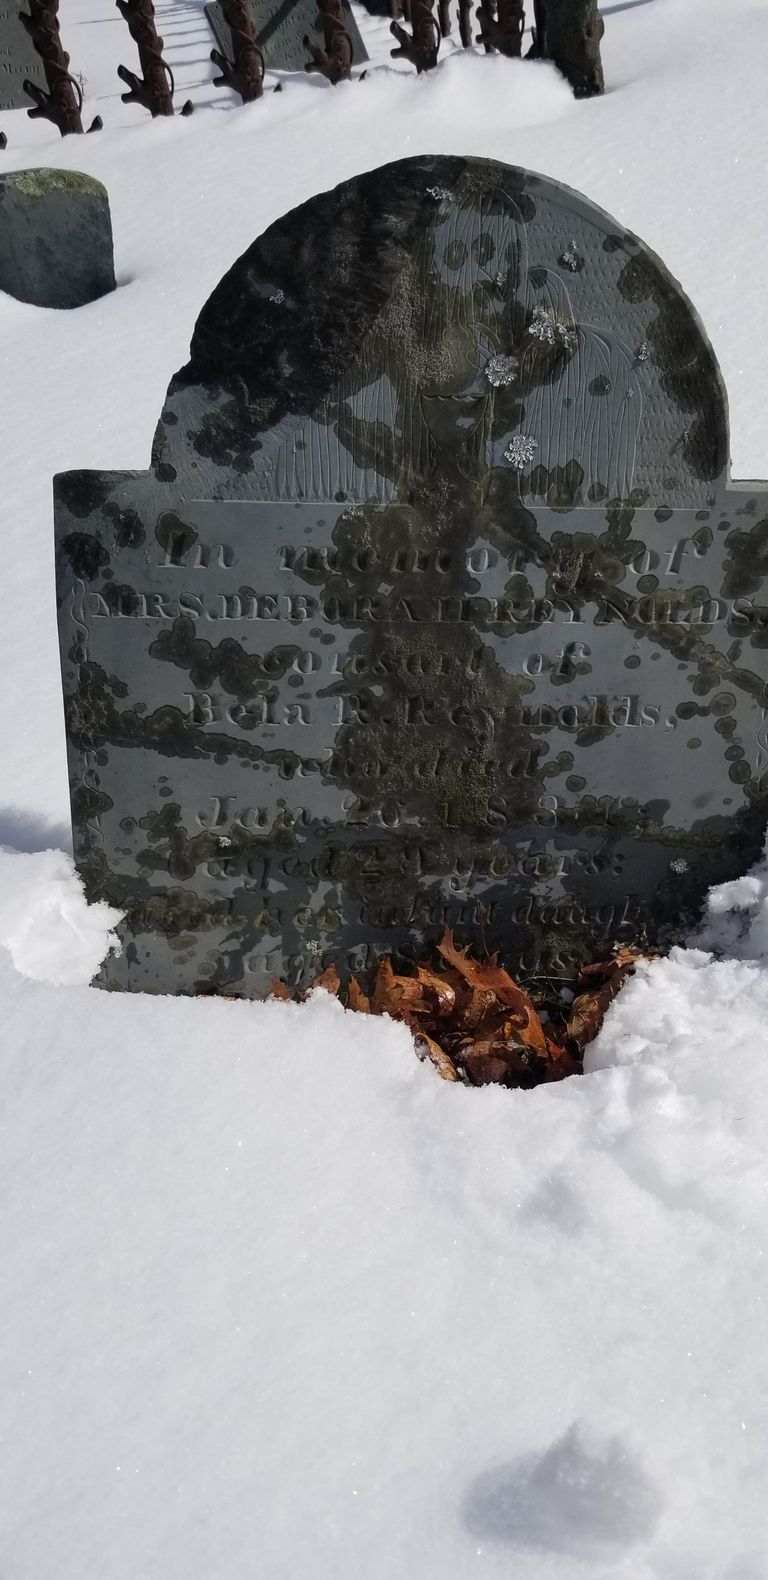          Bela and Deborah Reynolds Grave, Dennysville, Maine picture number 1
   